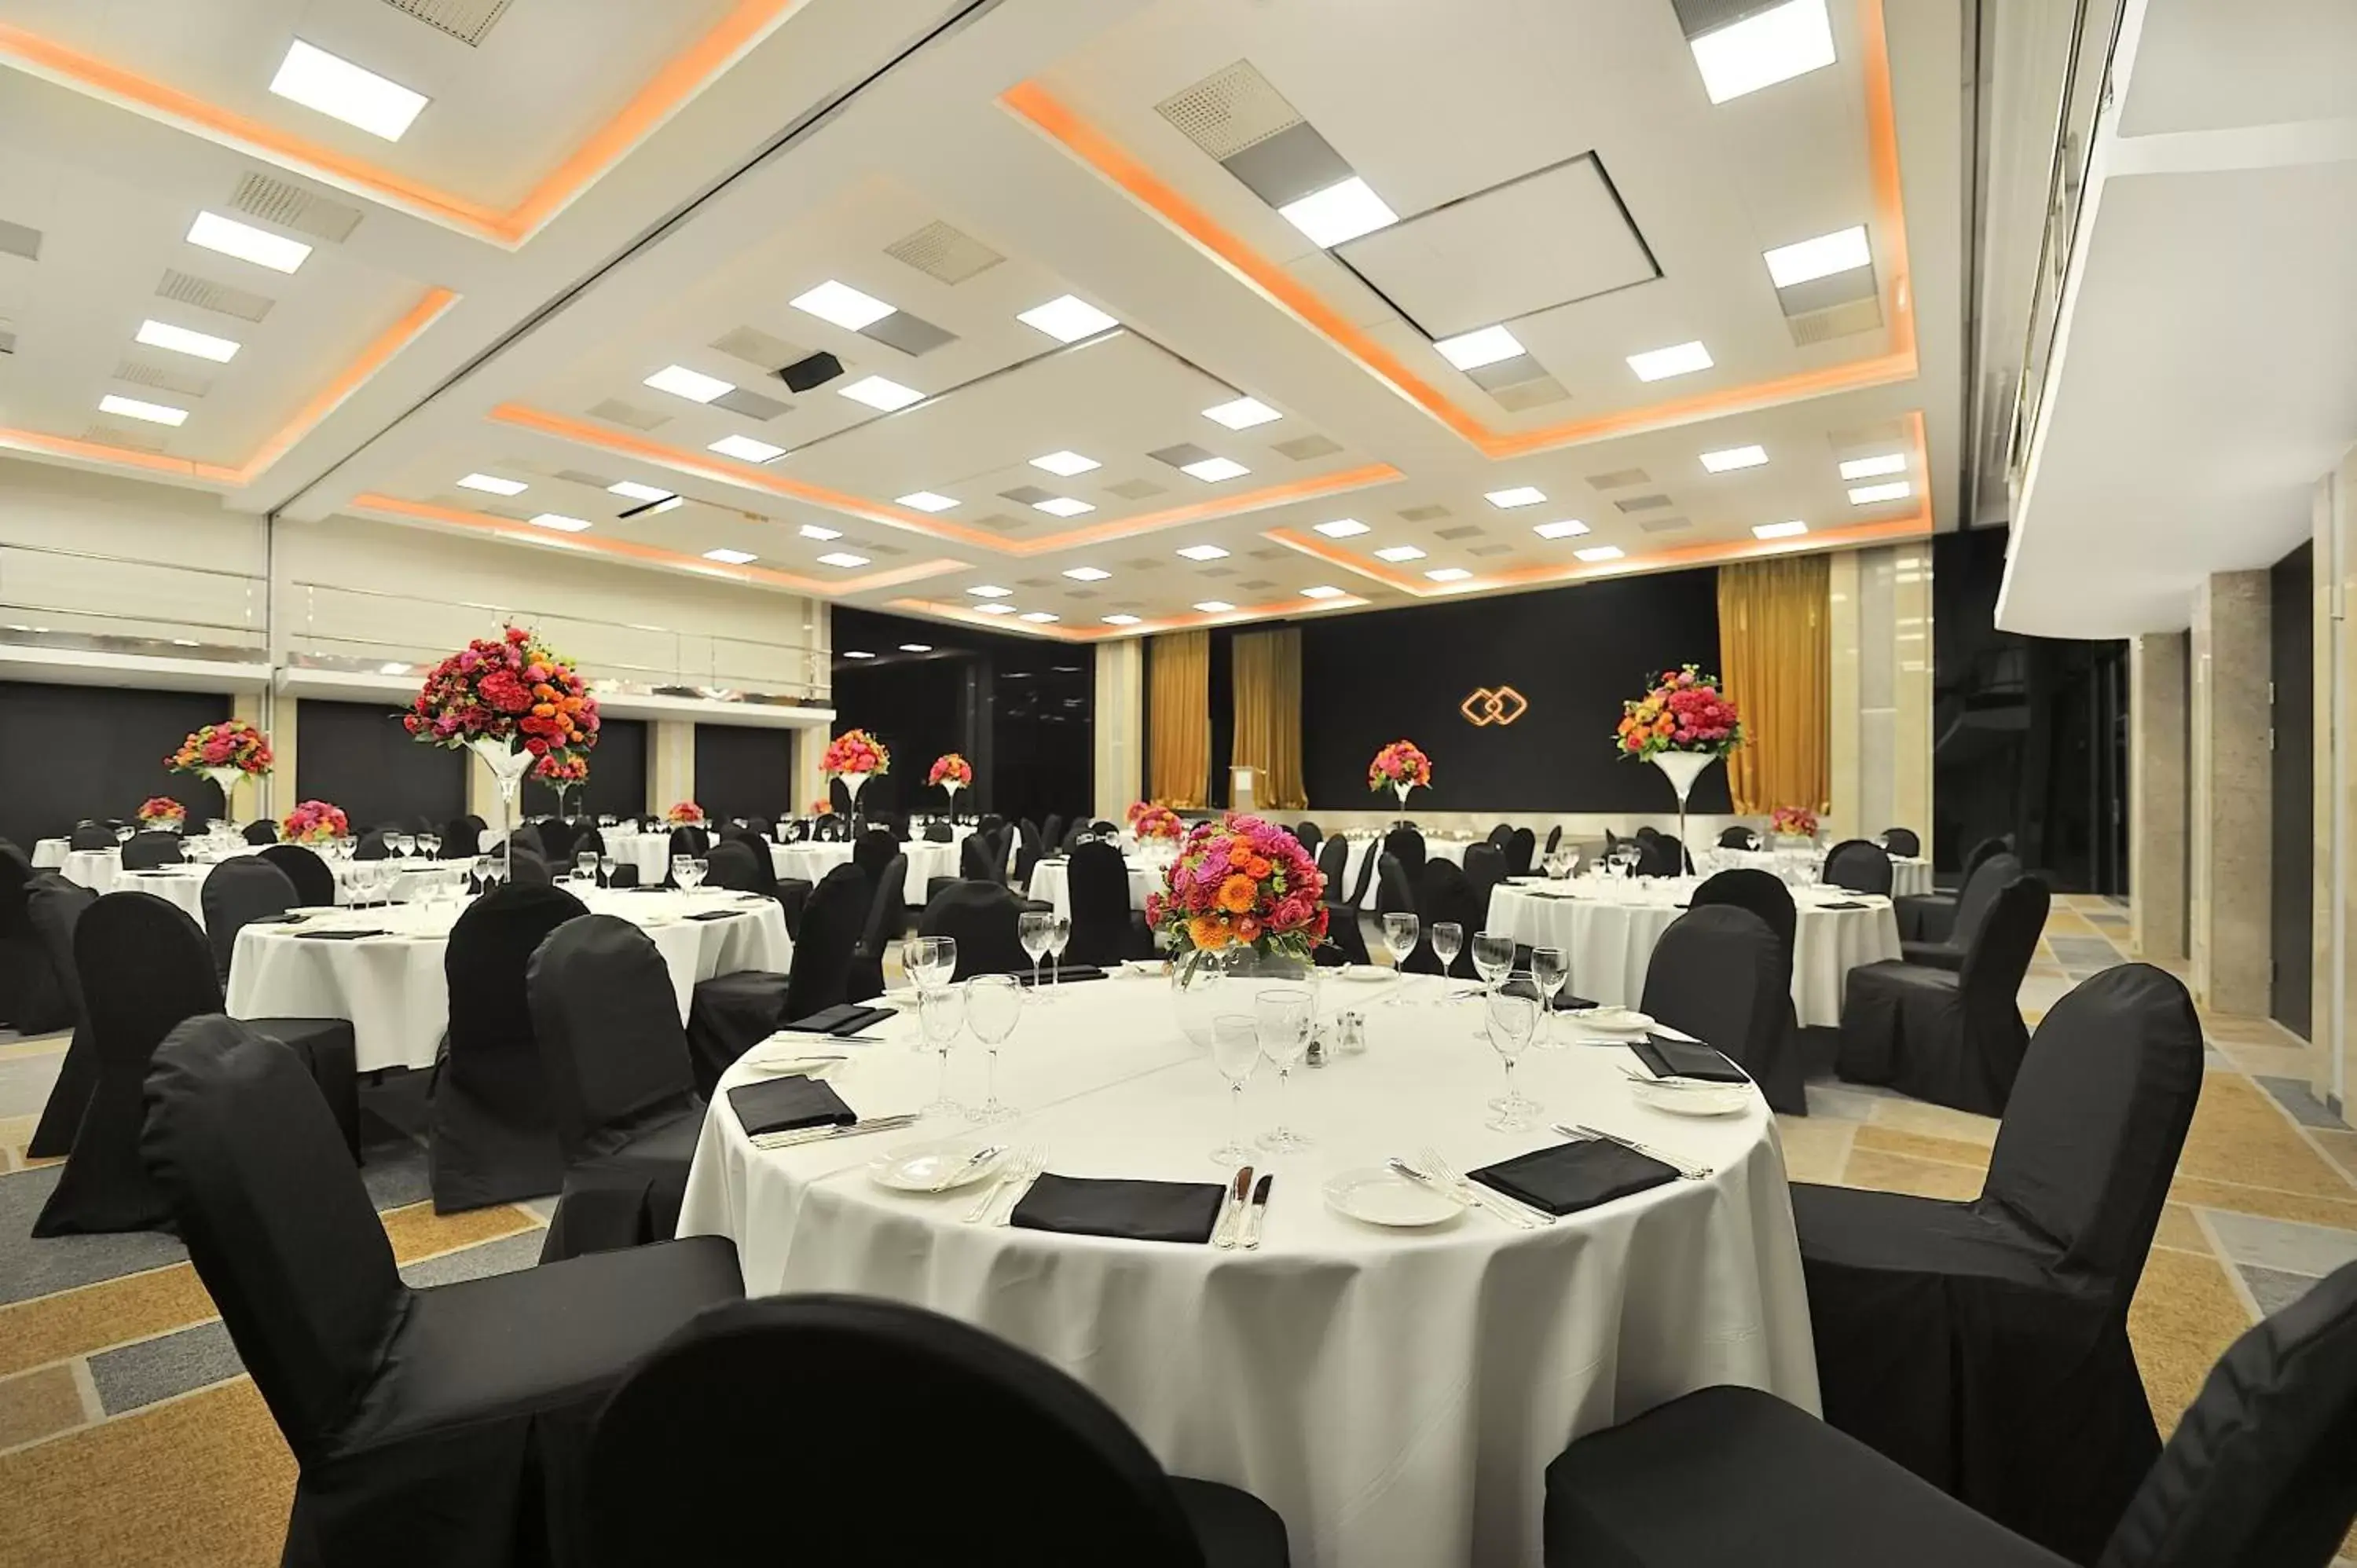 Banquet/Function facilities, Banquet Facilities in Sofitel Warsaw Victoria